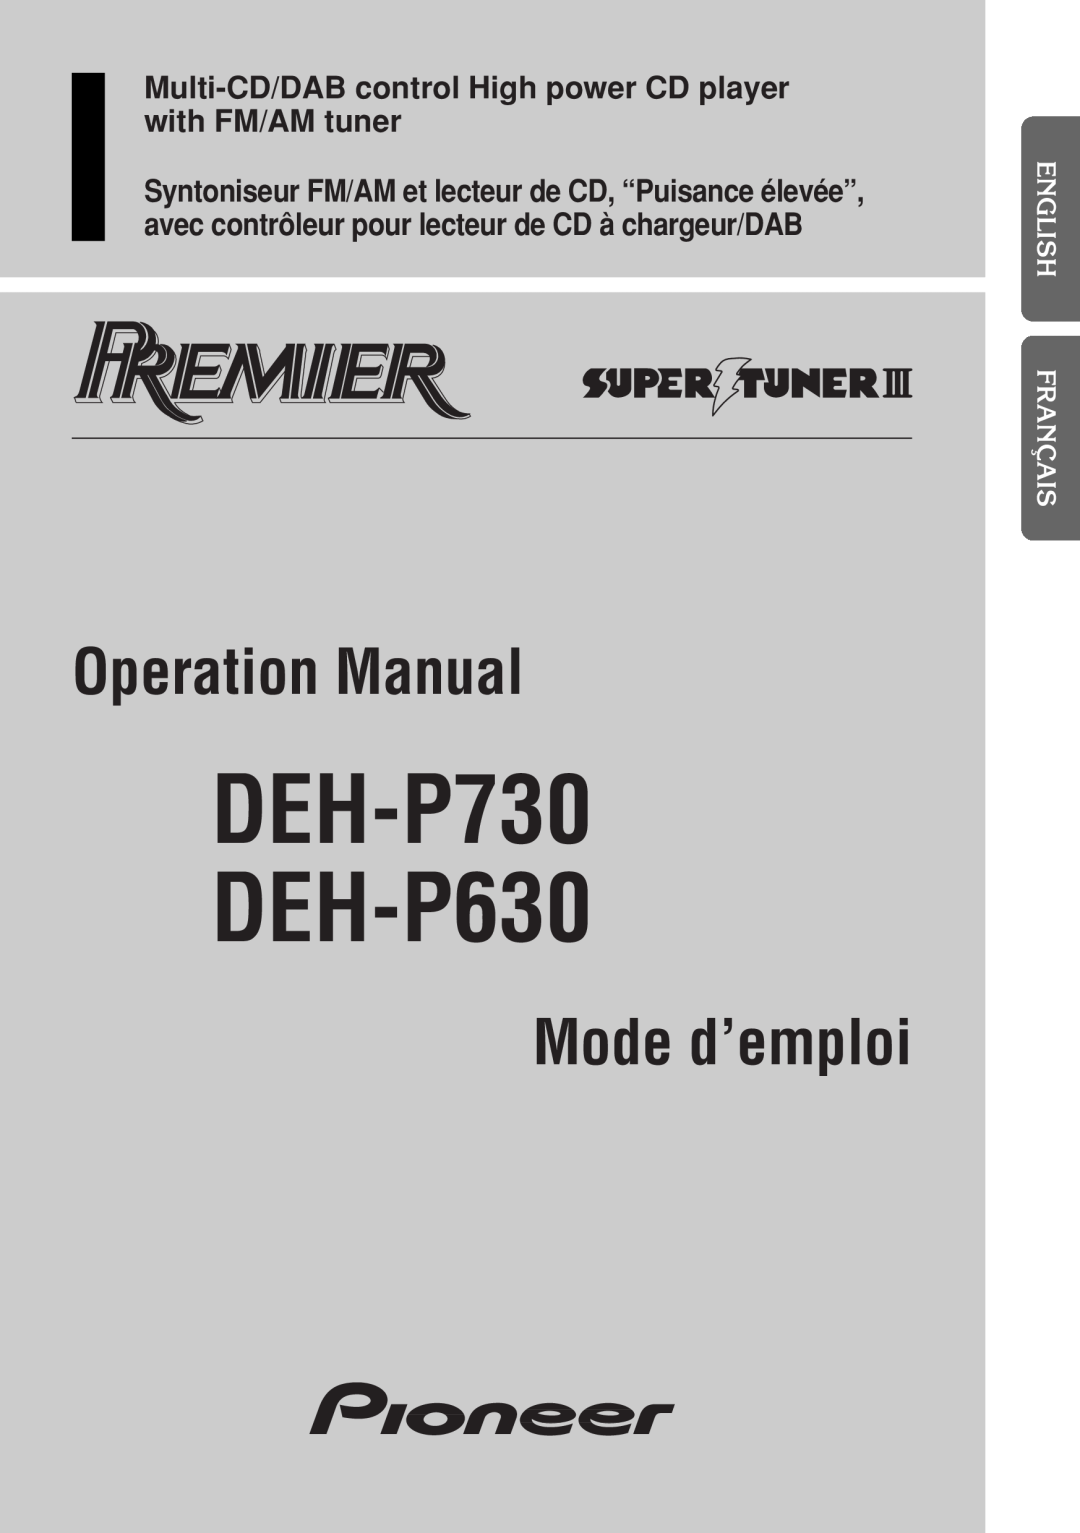 Pioneer operation manual English Français Deutsch Français Italiano Nederlands, DEH-P730 DEH-P630, Operation Manual 